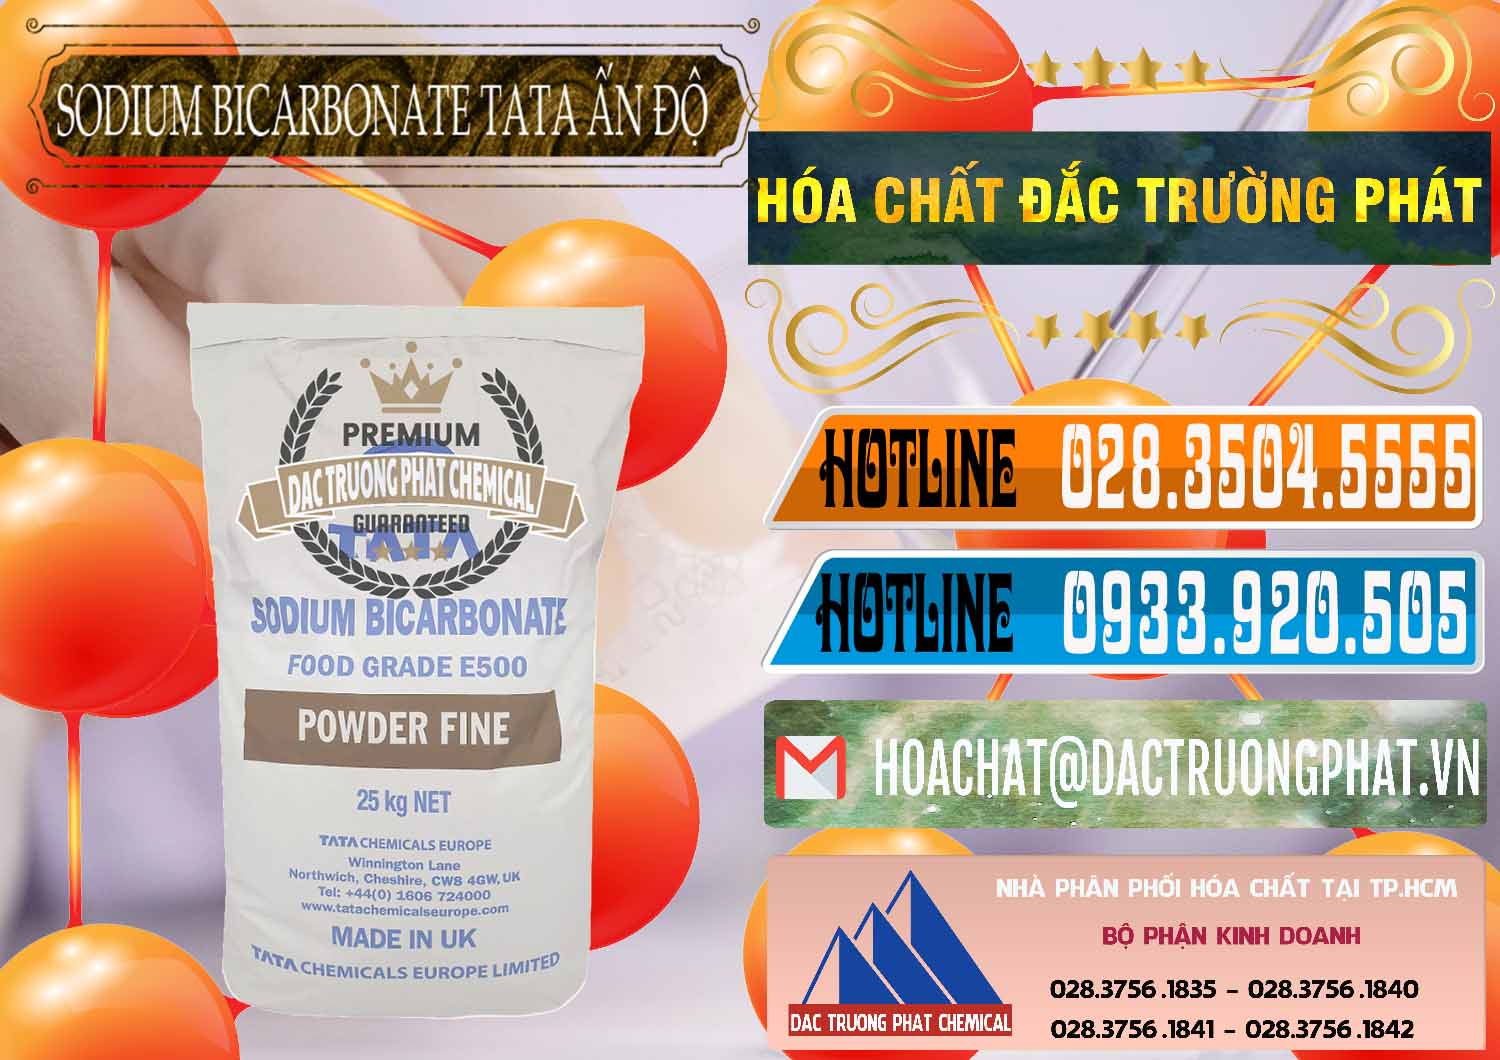 Nơi bán - cung cấp Sodium Bicarbonate – Bicar NaHCO3 E500 Thực Phẩm Food Grade Tata Ấn Độ India - 0261 - Cung cấp _ phân phối hóa chất tại TP.HCM - stmp.net